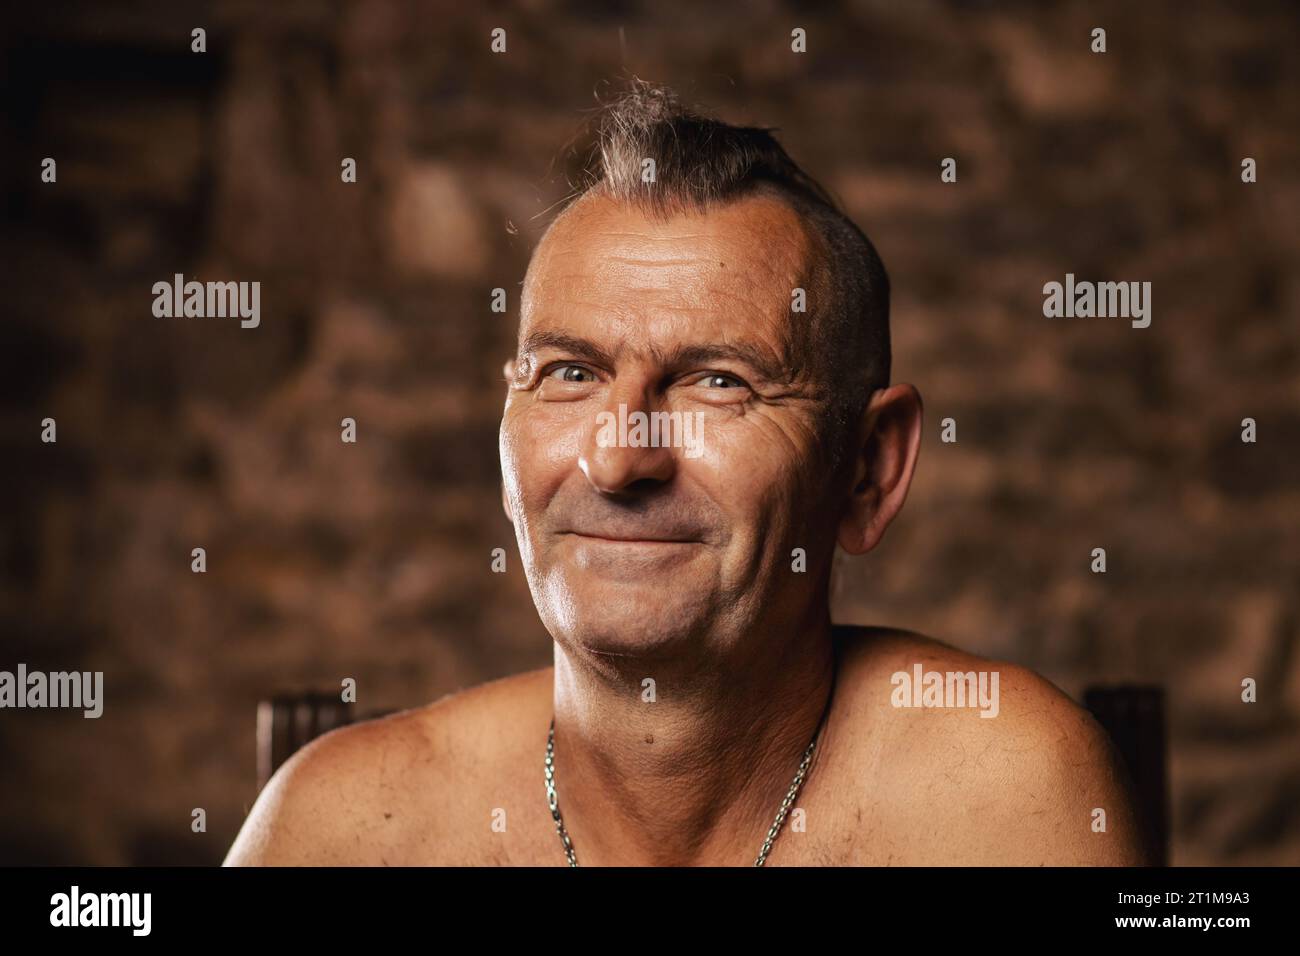 Un homme plus âgé satisfait, âgé de soixante ans, sourit et regarde la caméra. Banque D'Images